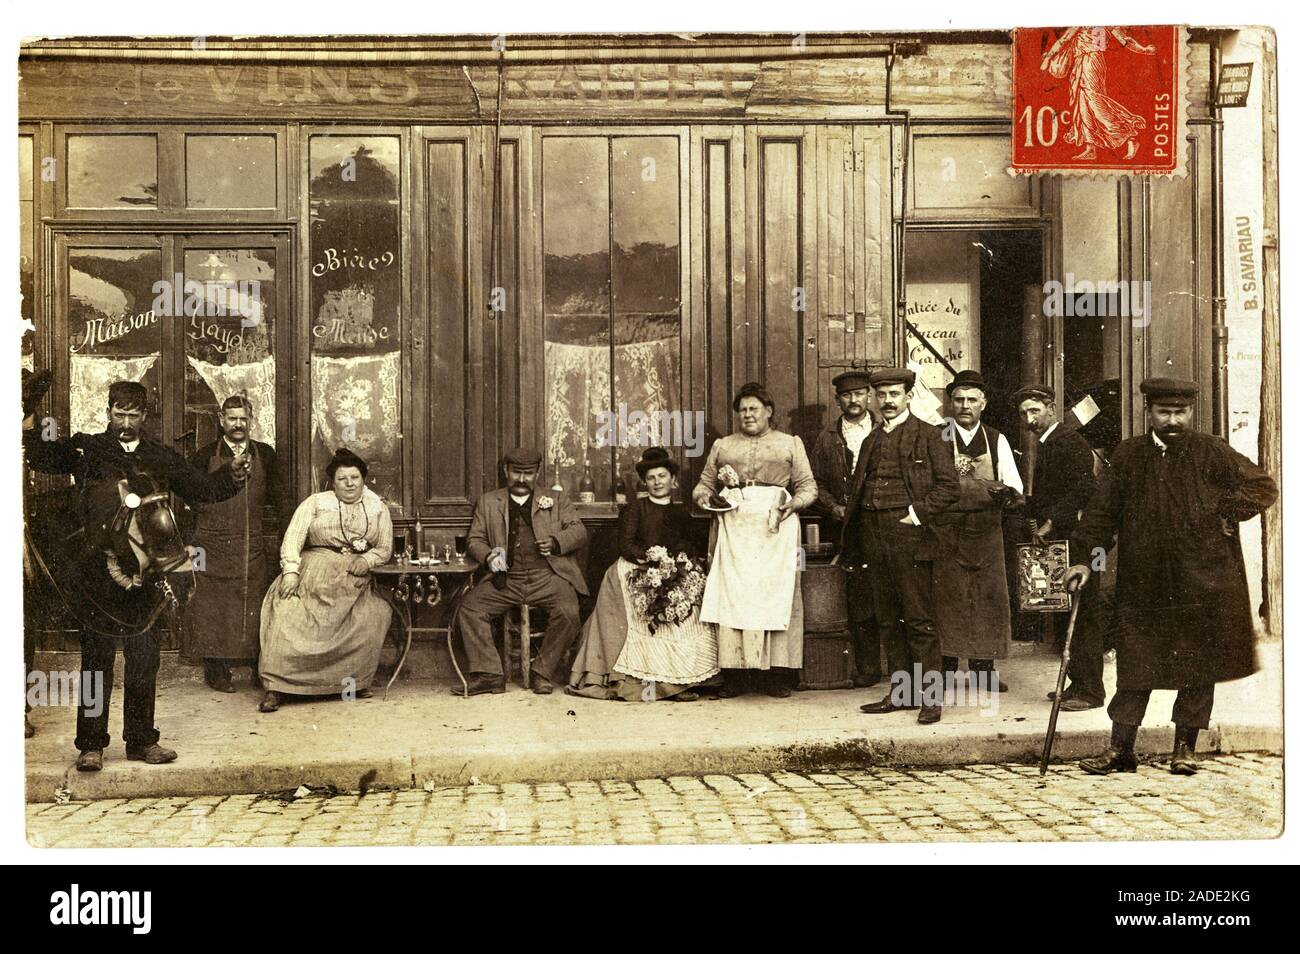 Commerce de vins, traiteur et hotel, maison Gayda, rue Brancion, Paris. Carte postale debut XXeme siecle. Stock Photo